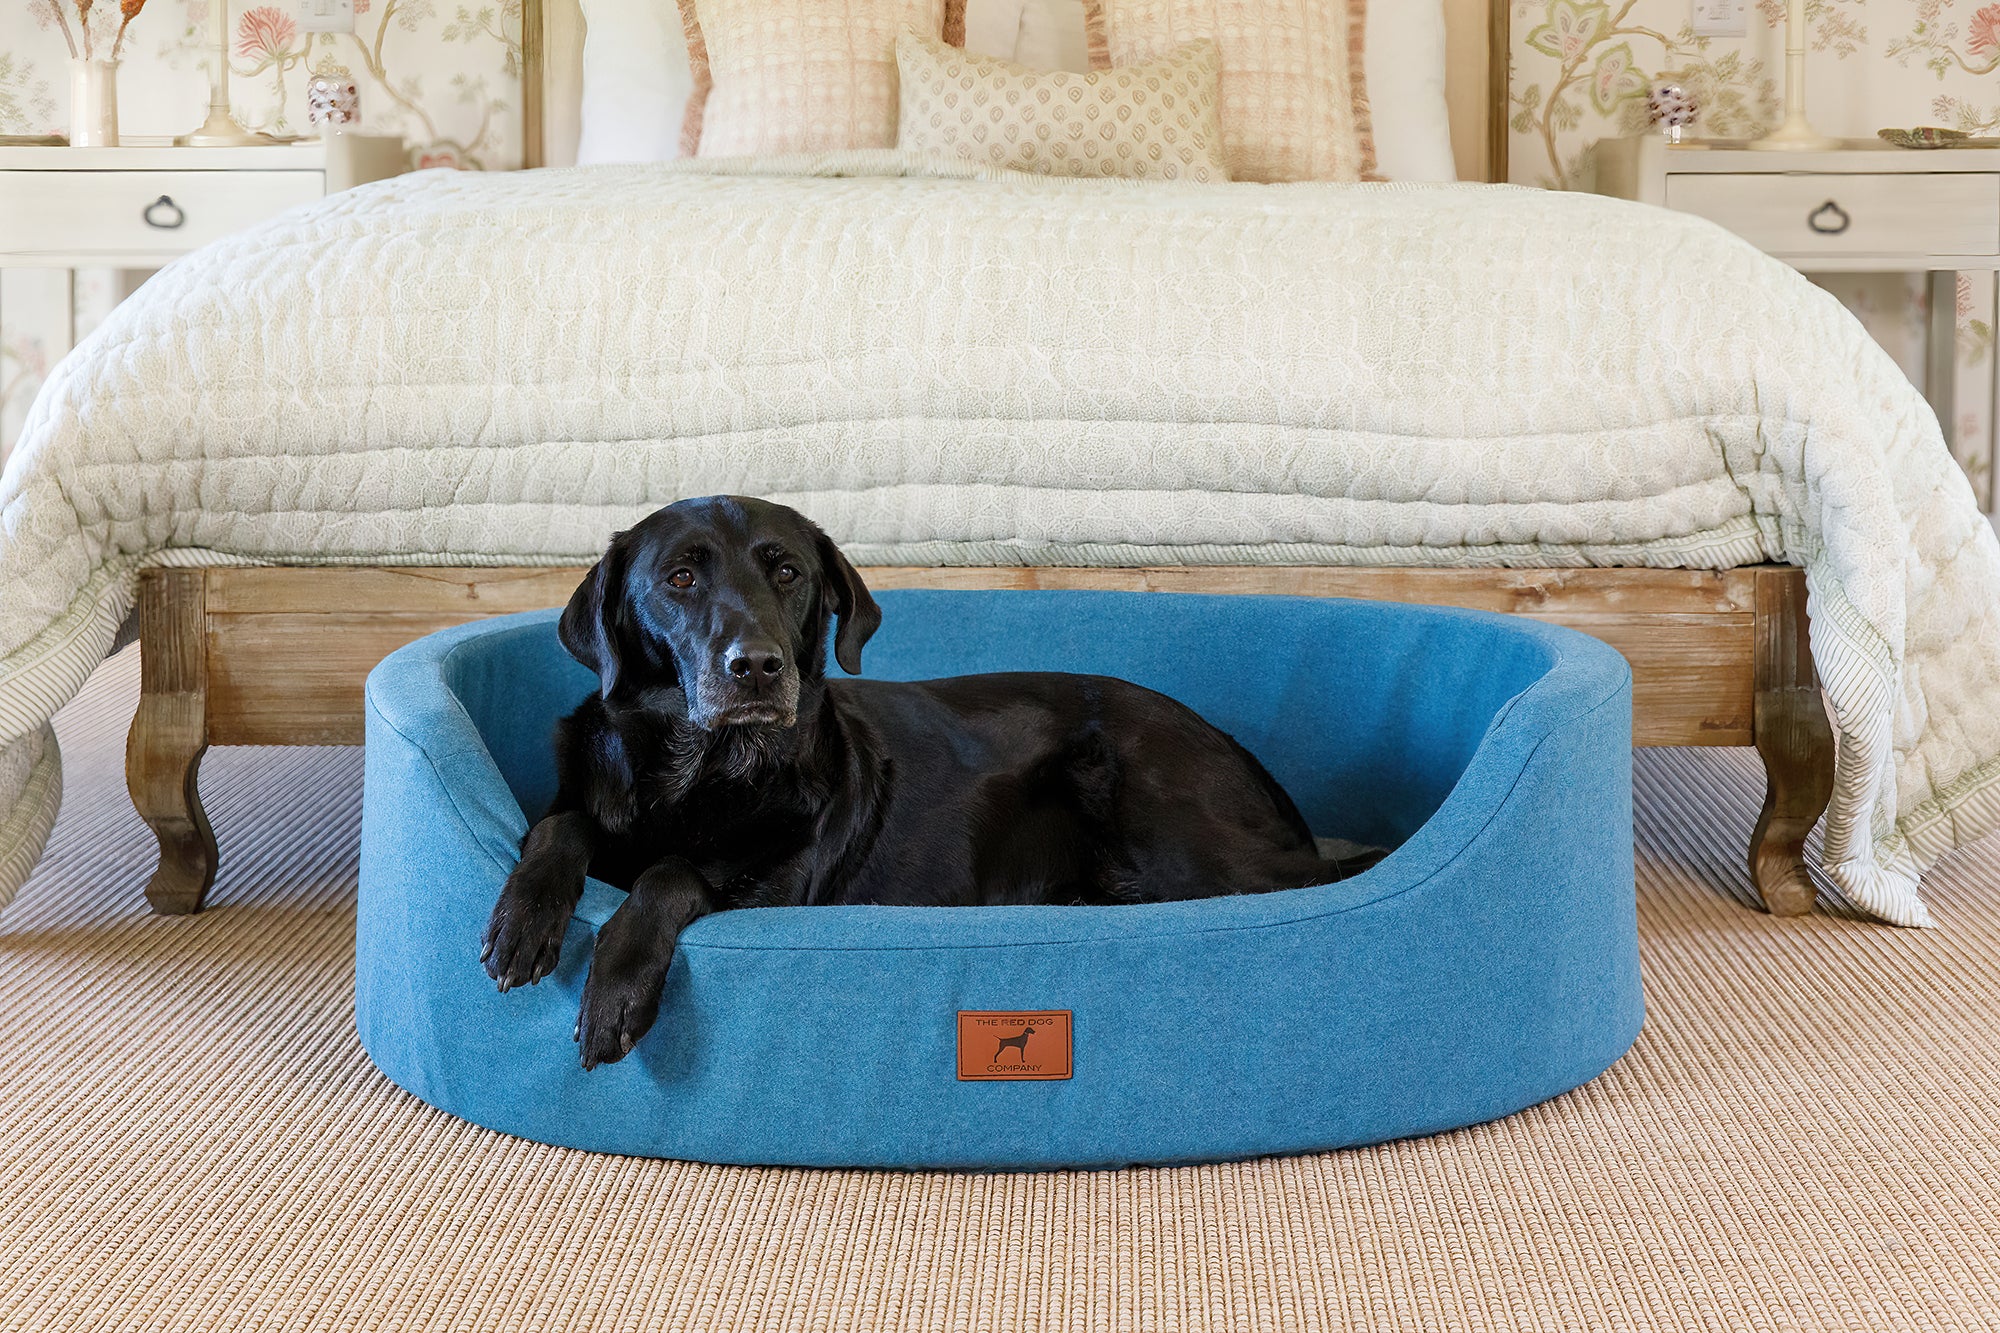 Cerulean Blue Oval Dog Bed